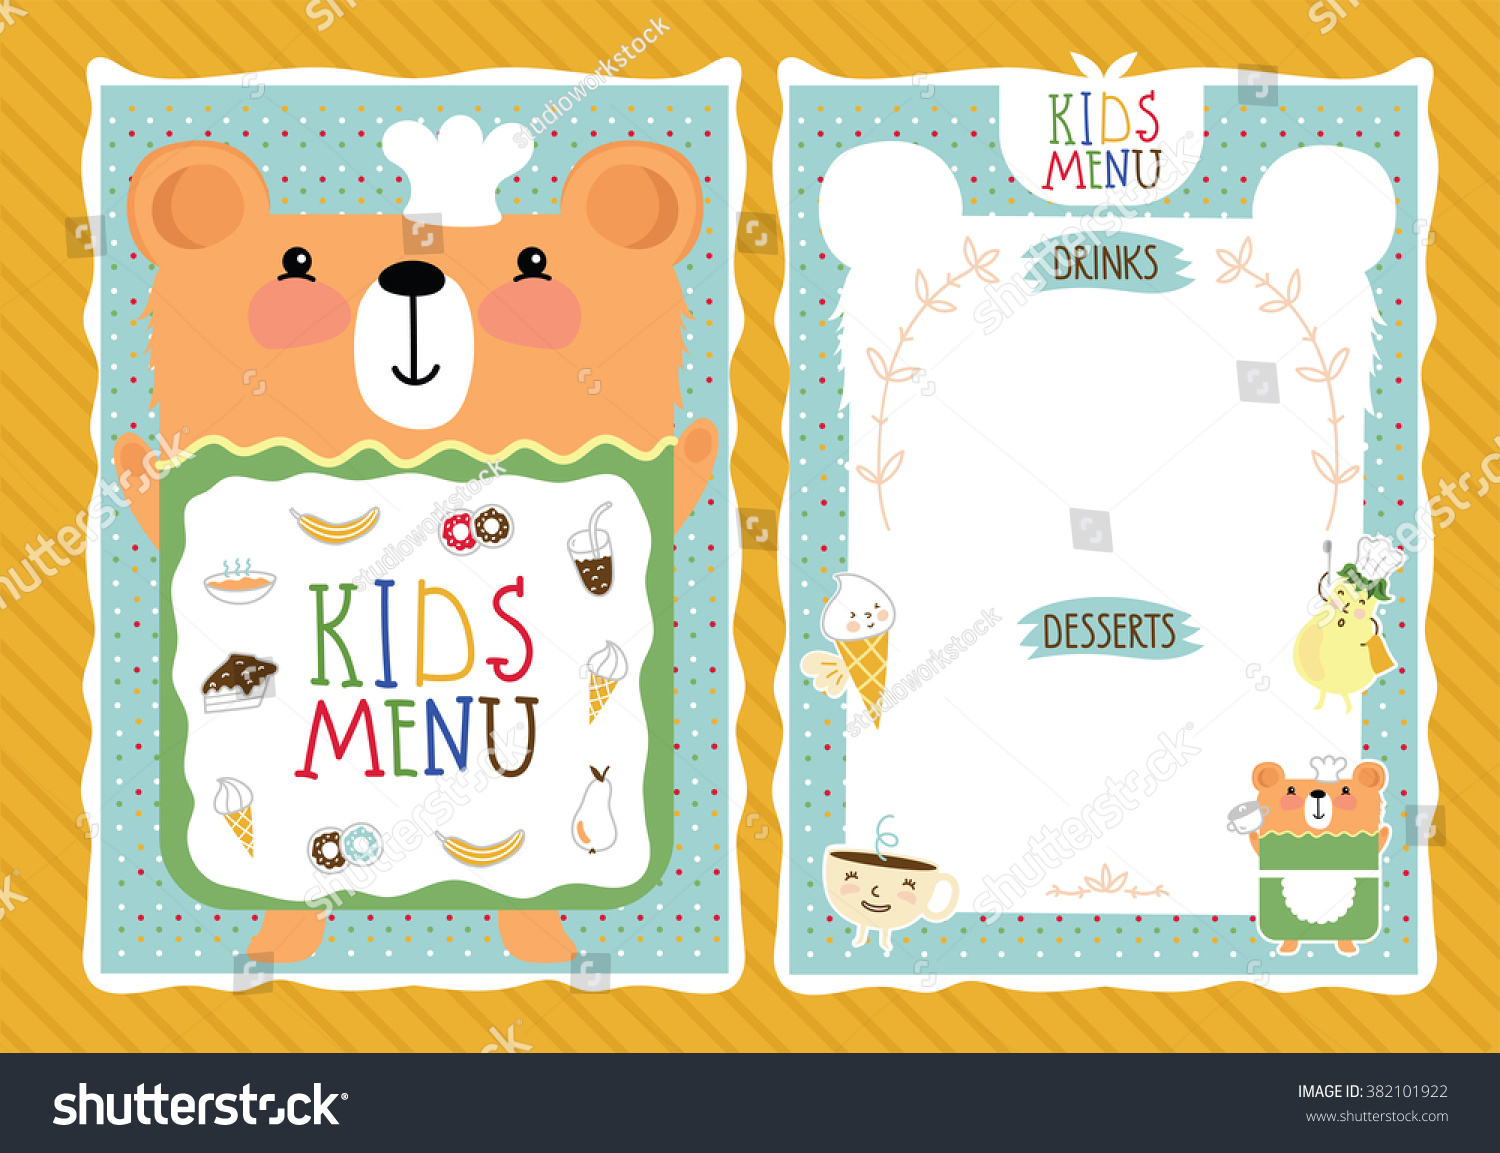 Kids menu шаблон